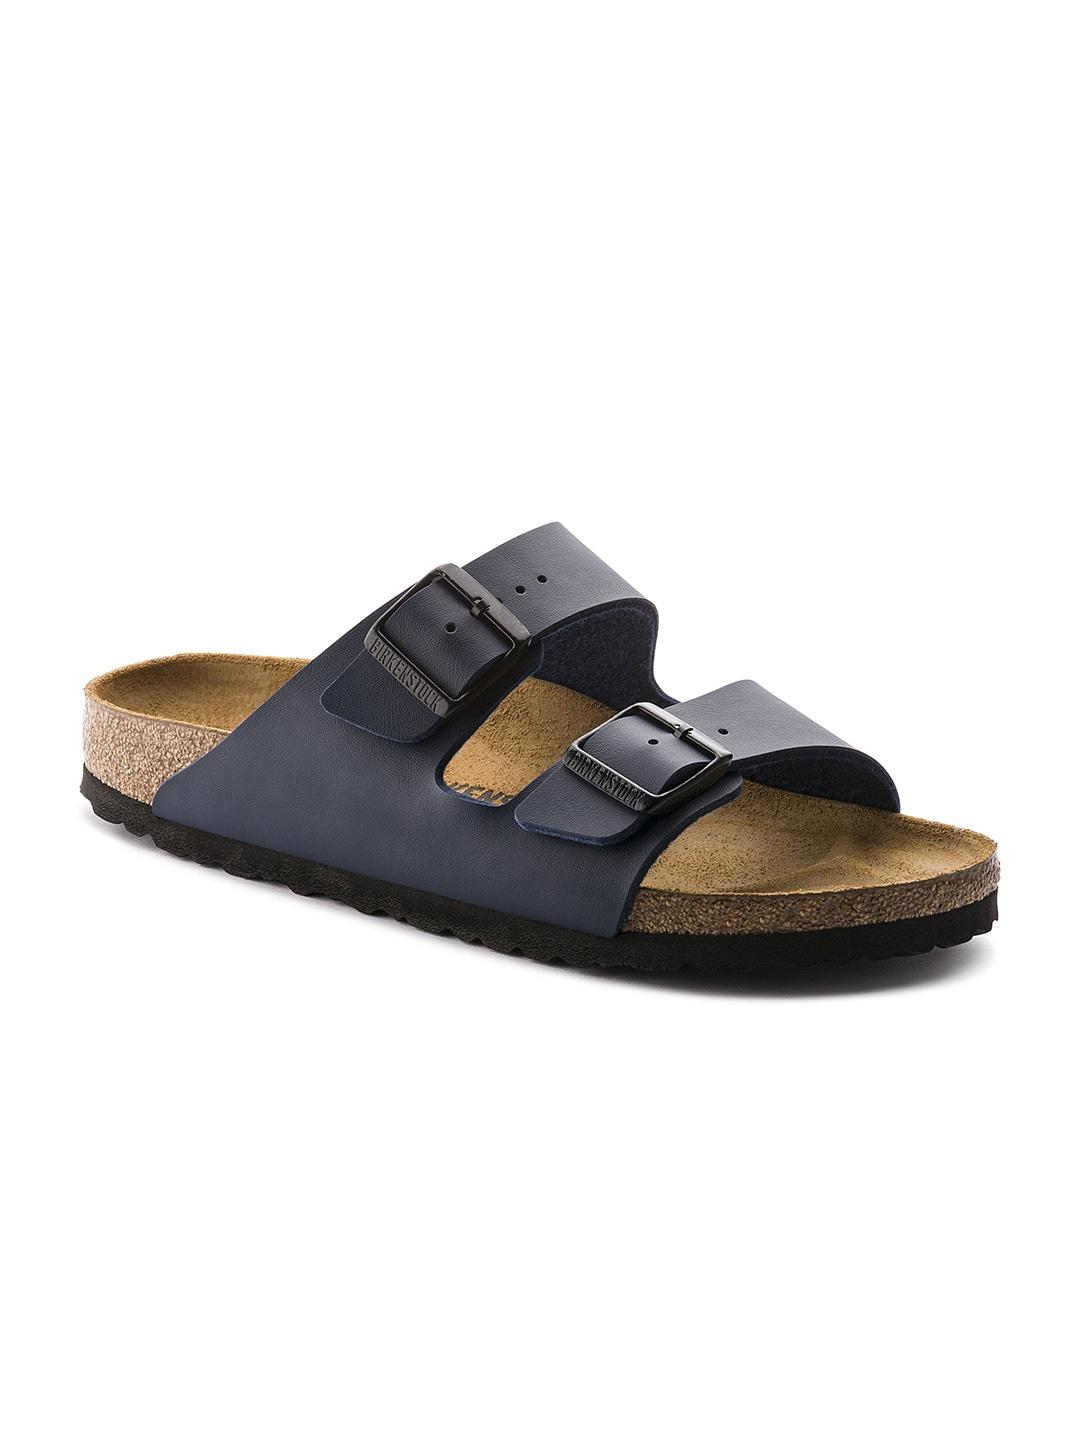 birkenstock navy blue arizona birko-flor regular width comfort sandals